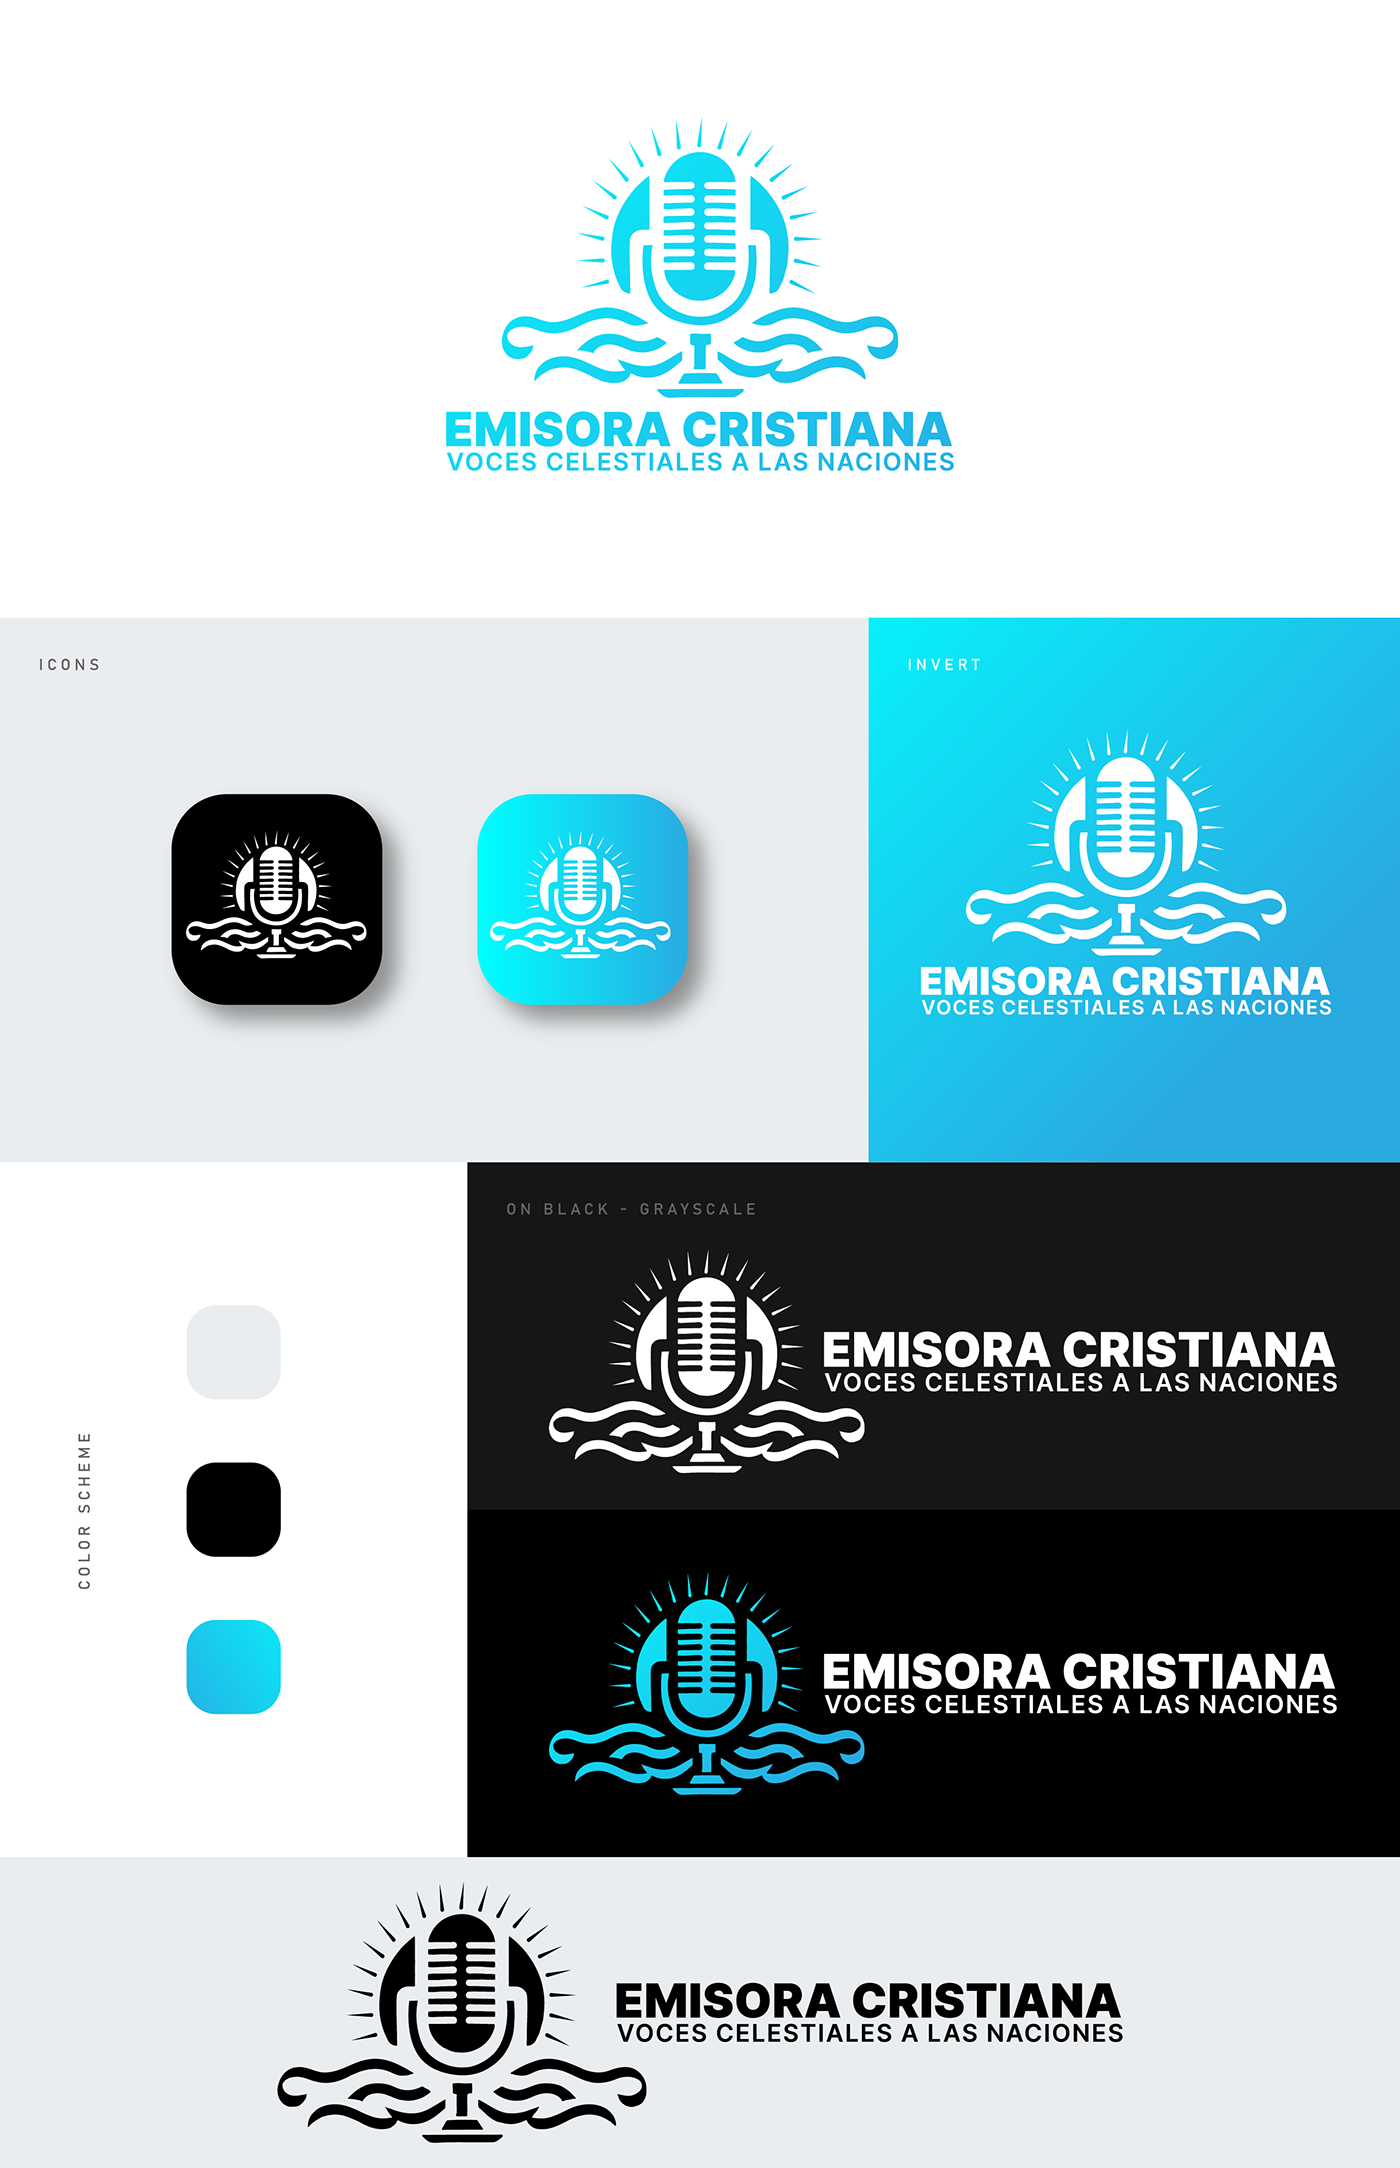 Logo Design Graphic Designer